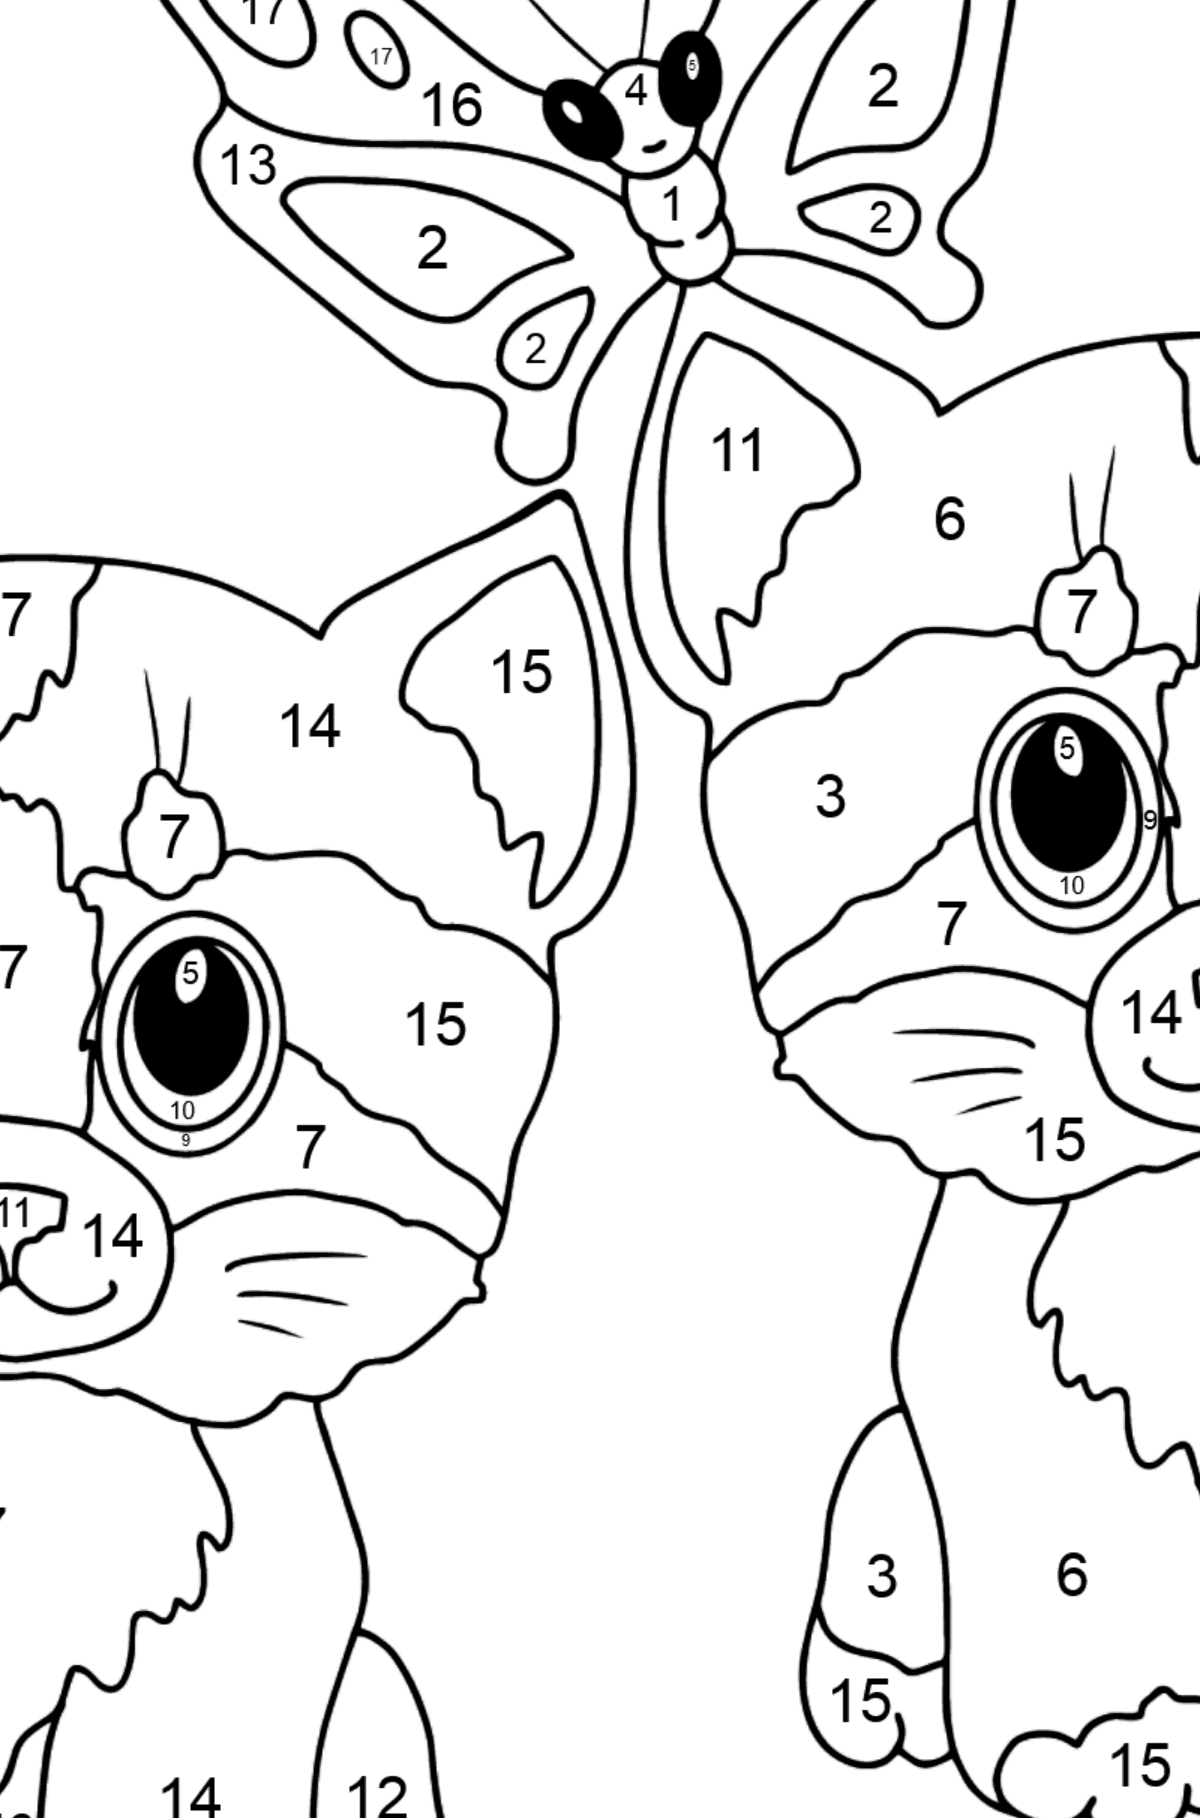 Boyama sayfası hafif kedi yavruları (zor) - Sayılarla Boyama çocuklar için